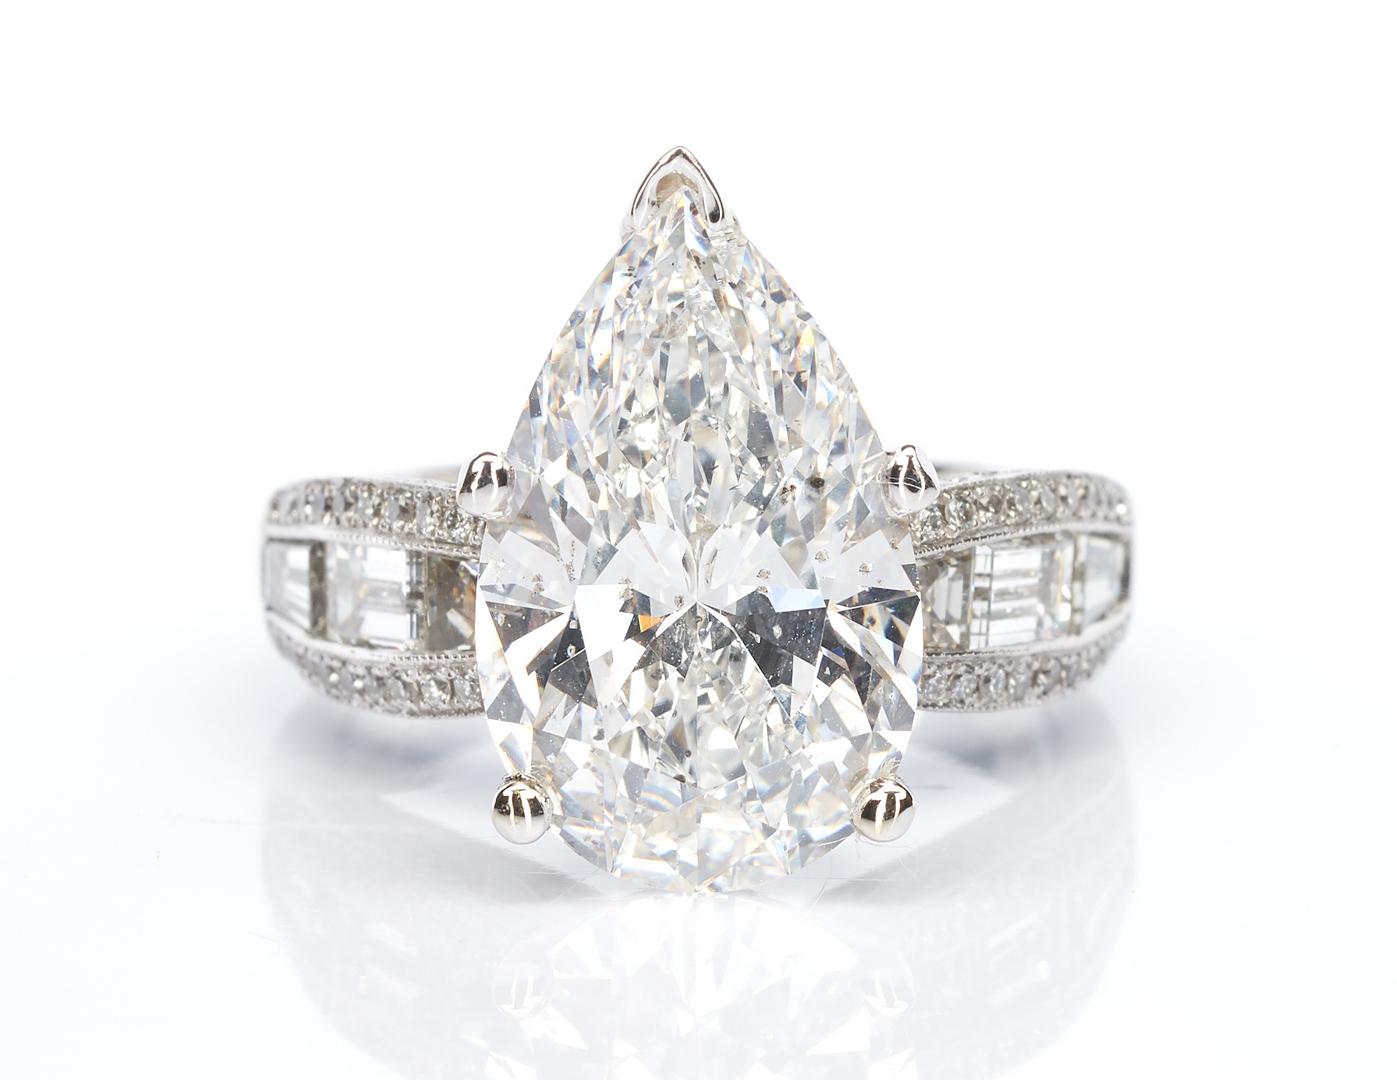 Ladies Platinum & 6 Carat Diamond Engagement Ring - Image 2 of 17